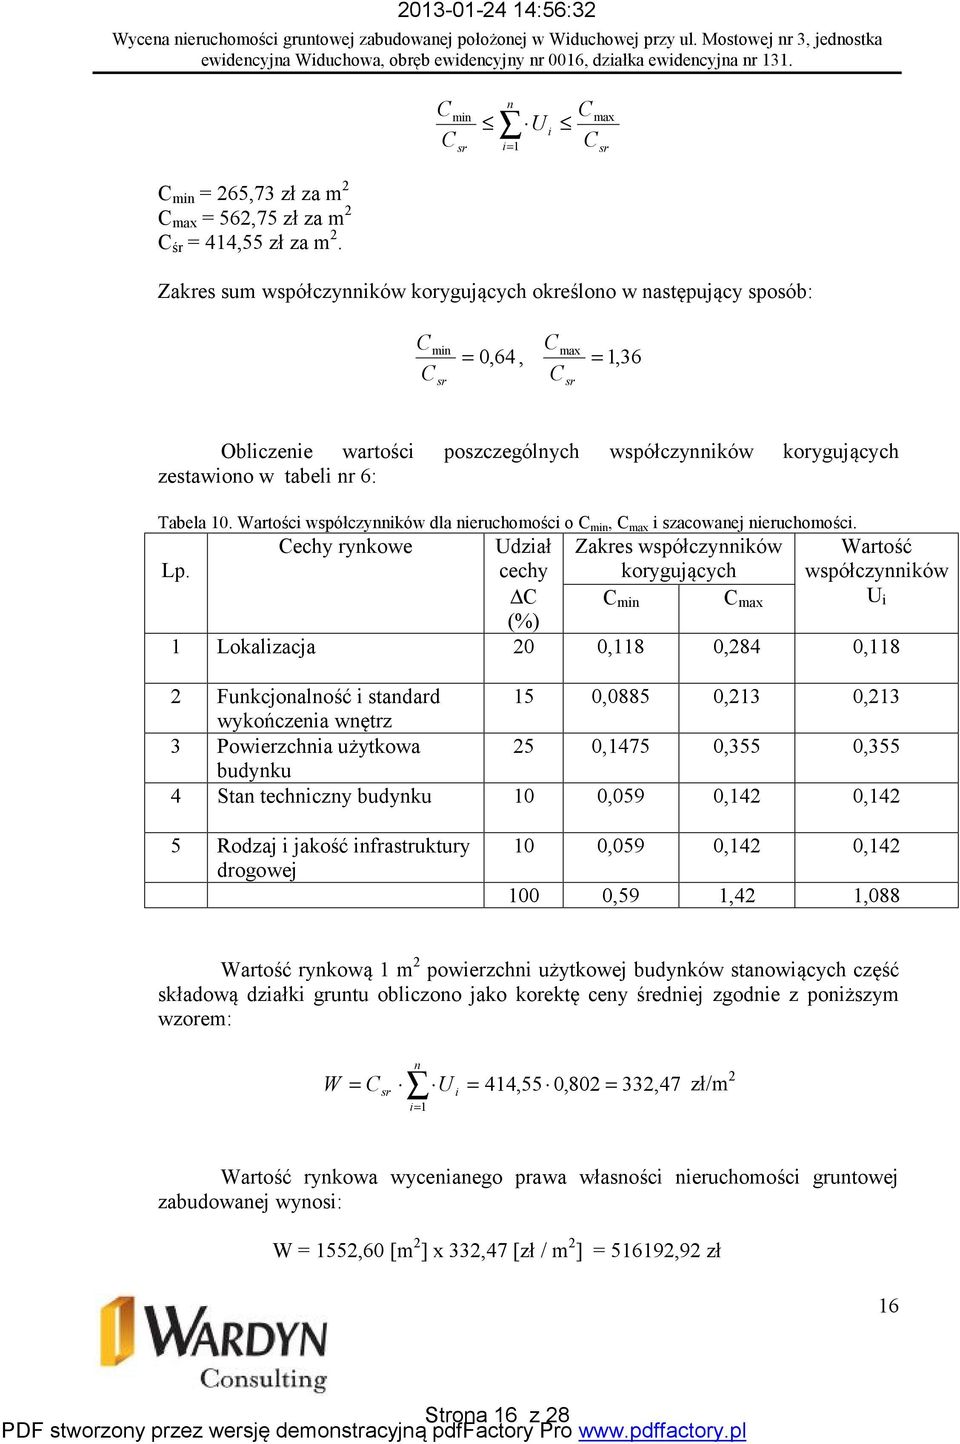 Tabela 10. Wartości współczynników dla nieruchomości o C min, C max i szacowanej nieruchomości. Lp.